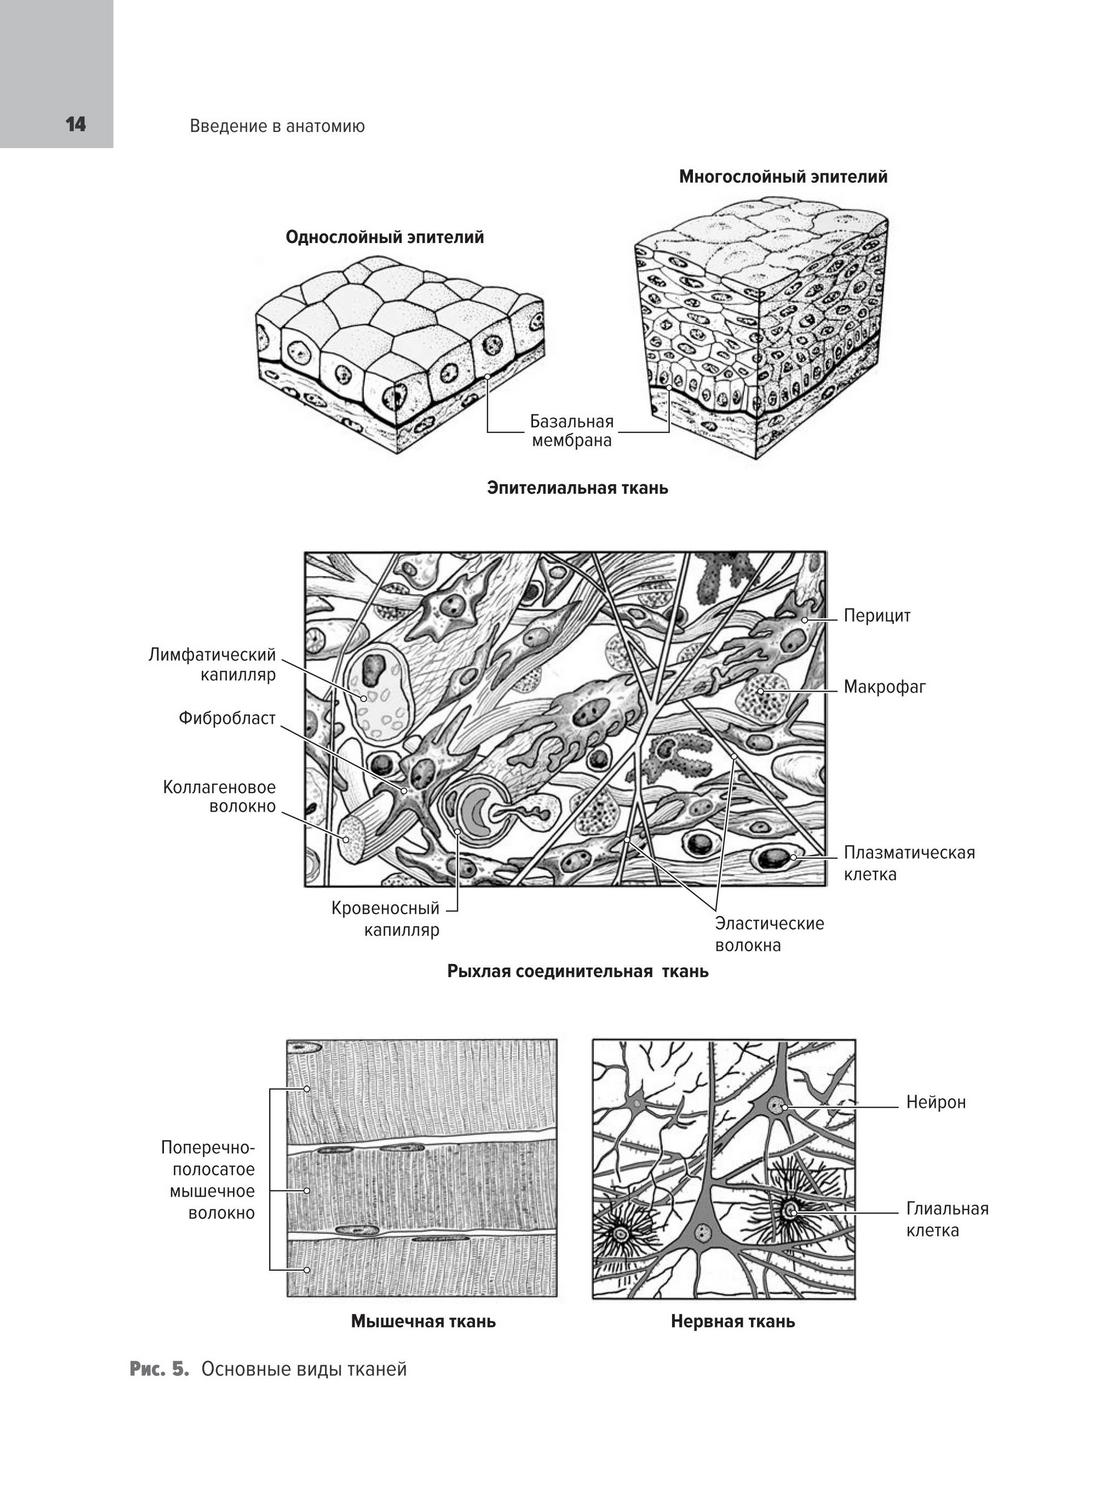 Основные виды тканей